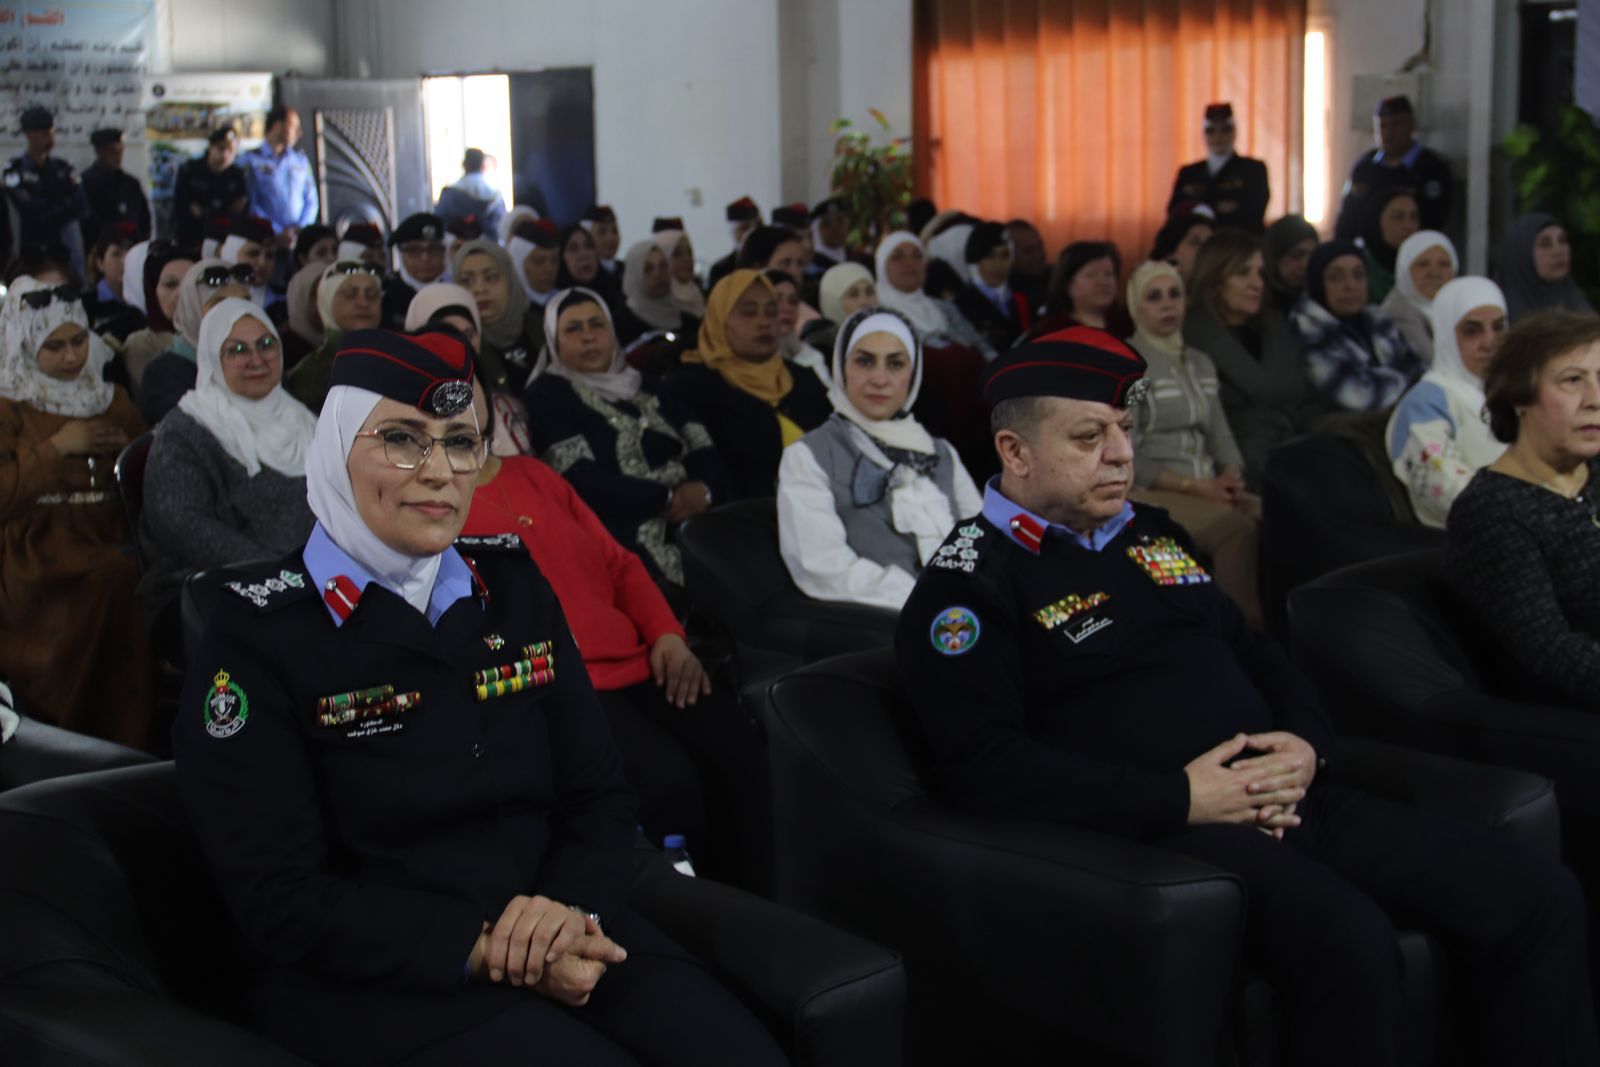 مديرية الأمن العام تحتفل بيوم الوفاء للمتقاعدين العسكريين والمحاربين القدامى